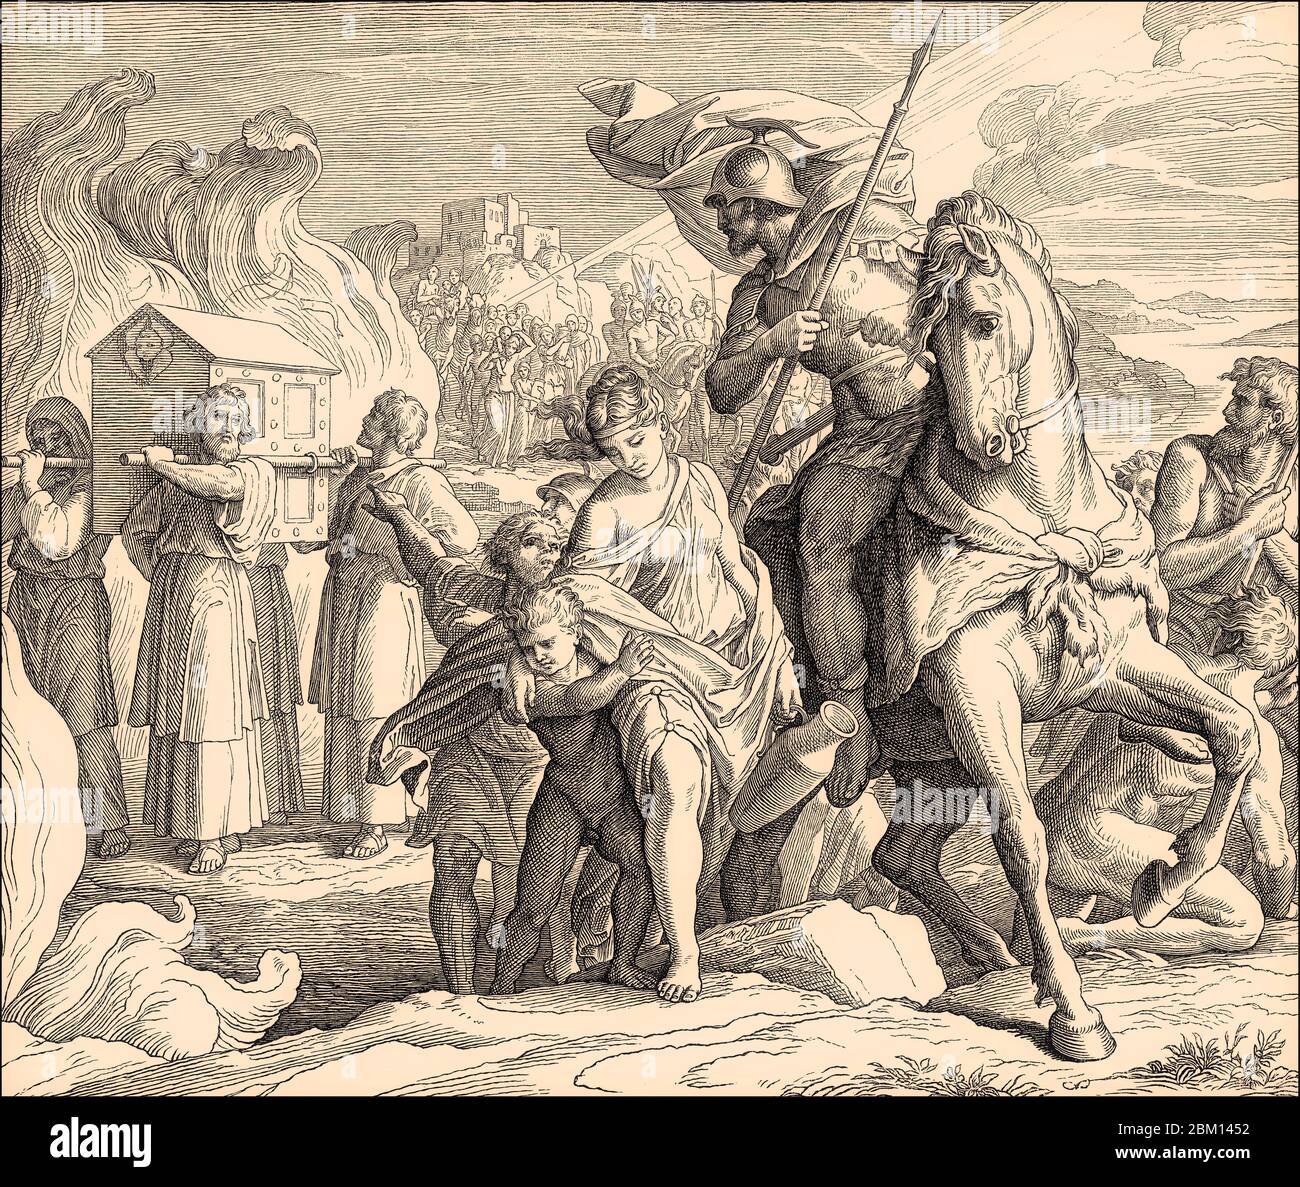 Attraversare il Giordano, Antico Testamento, di Julius Schnorr von Carolsfeld, 1860 Foto Stock